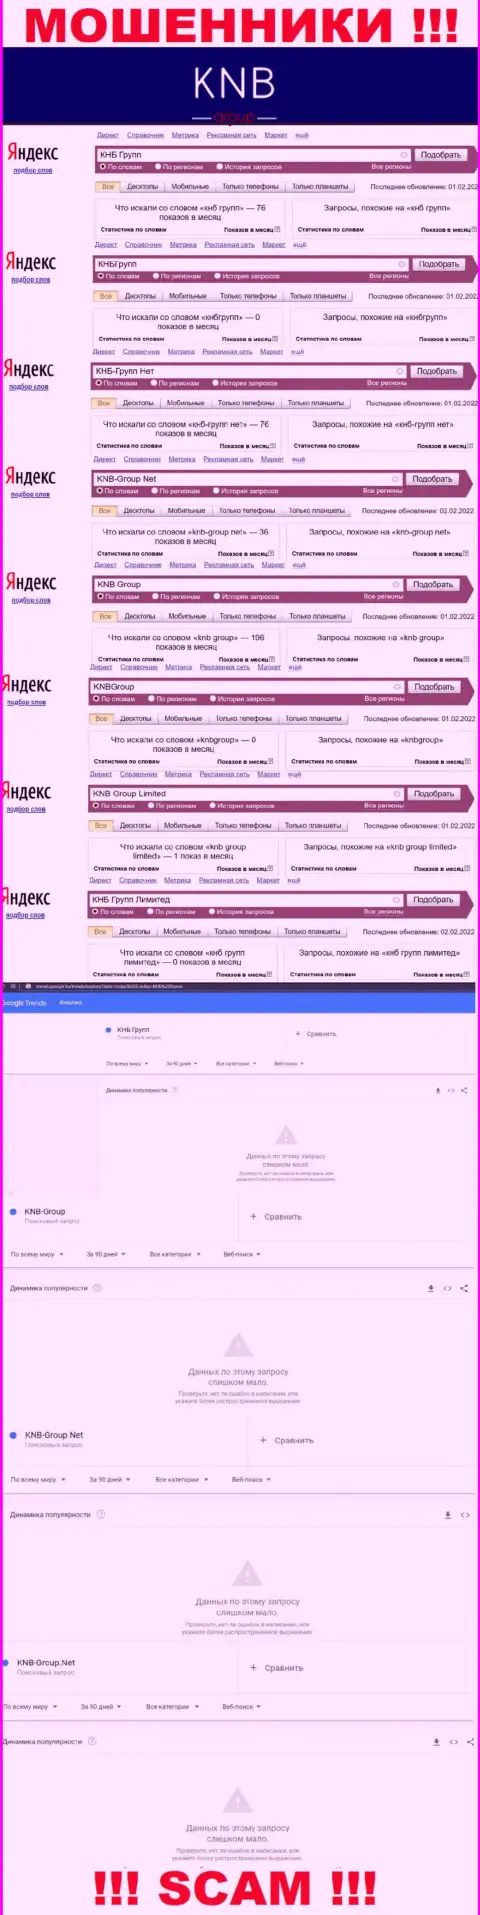 Скриншот статистических данных поисковых запросов по неправомерно действующей организации KNB Group Limited